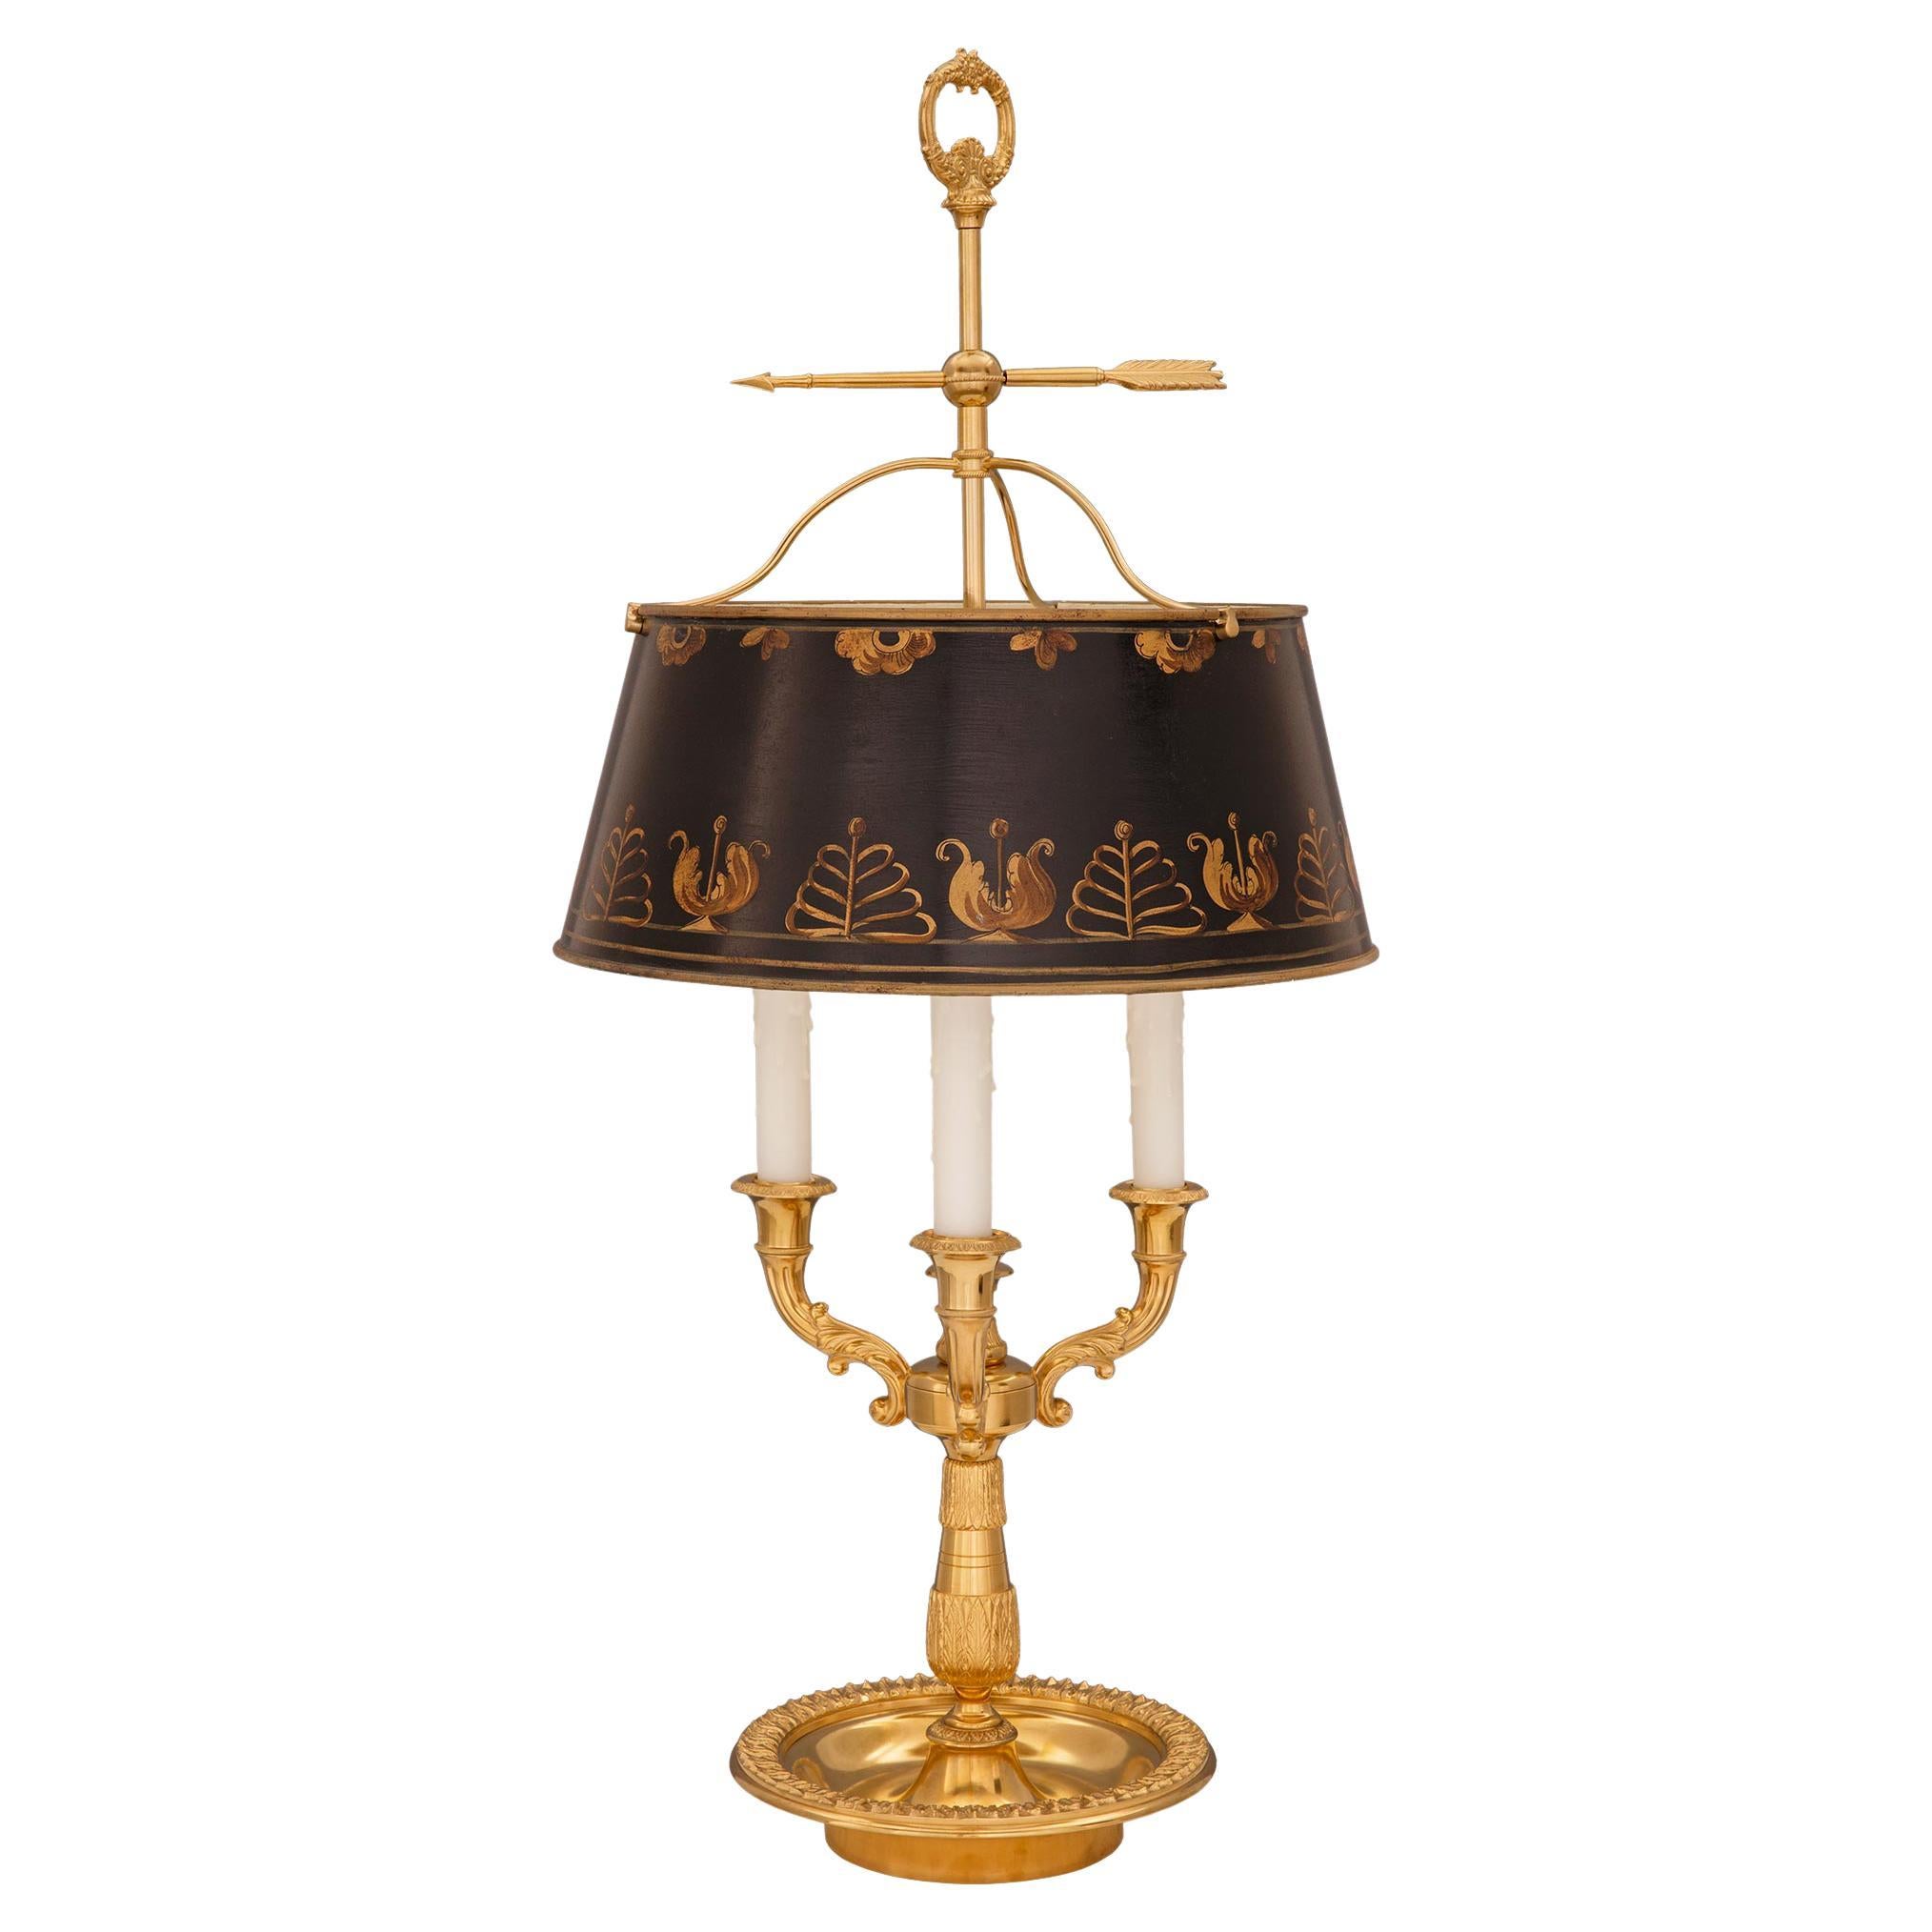  Lampe bouilotte française du 19ème siècle de style Louis XVI en bronze doré et tôle